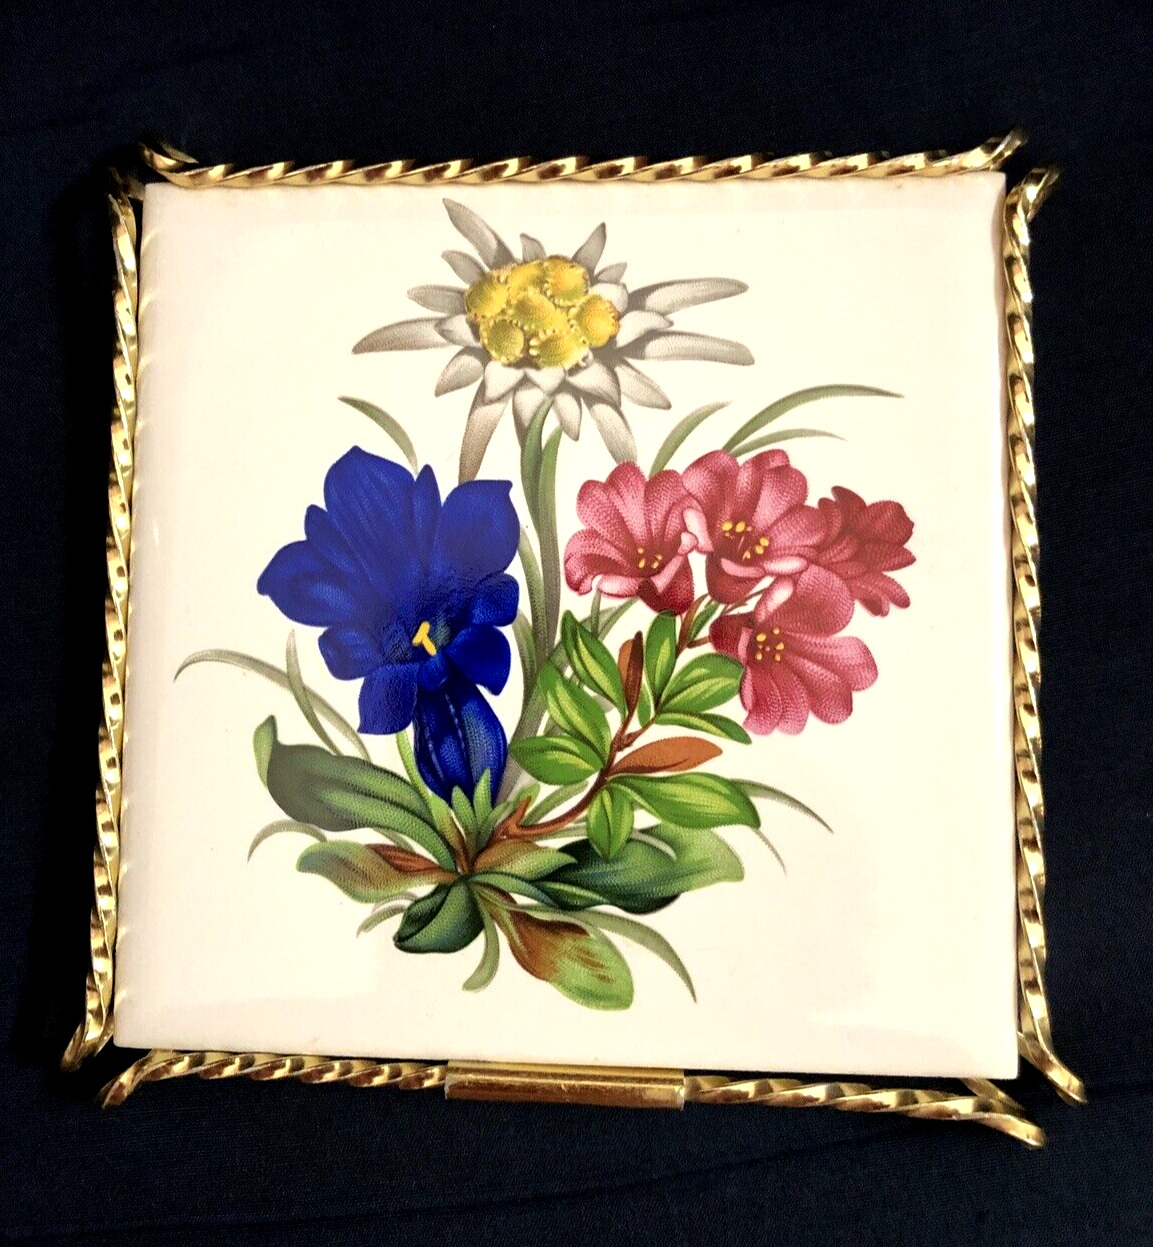 Vintage Villeroy Boch Porcelain Floral Tile Trivet w/Metal Frame Made in France